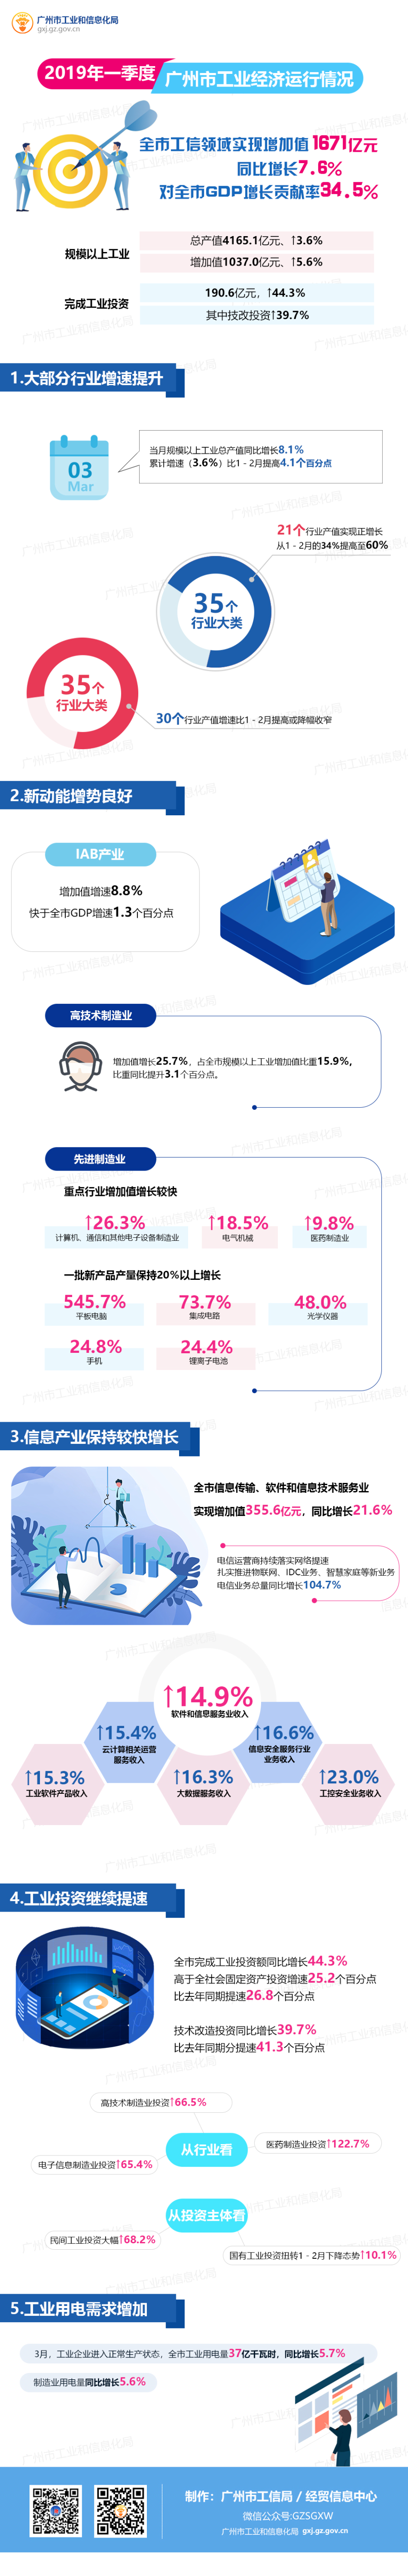 2019年第一季度广州工业经济运行情况（图解）.jpg